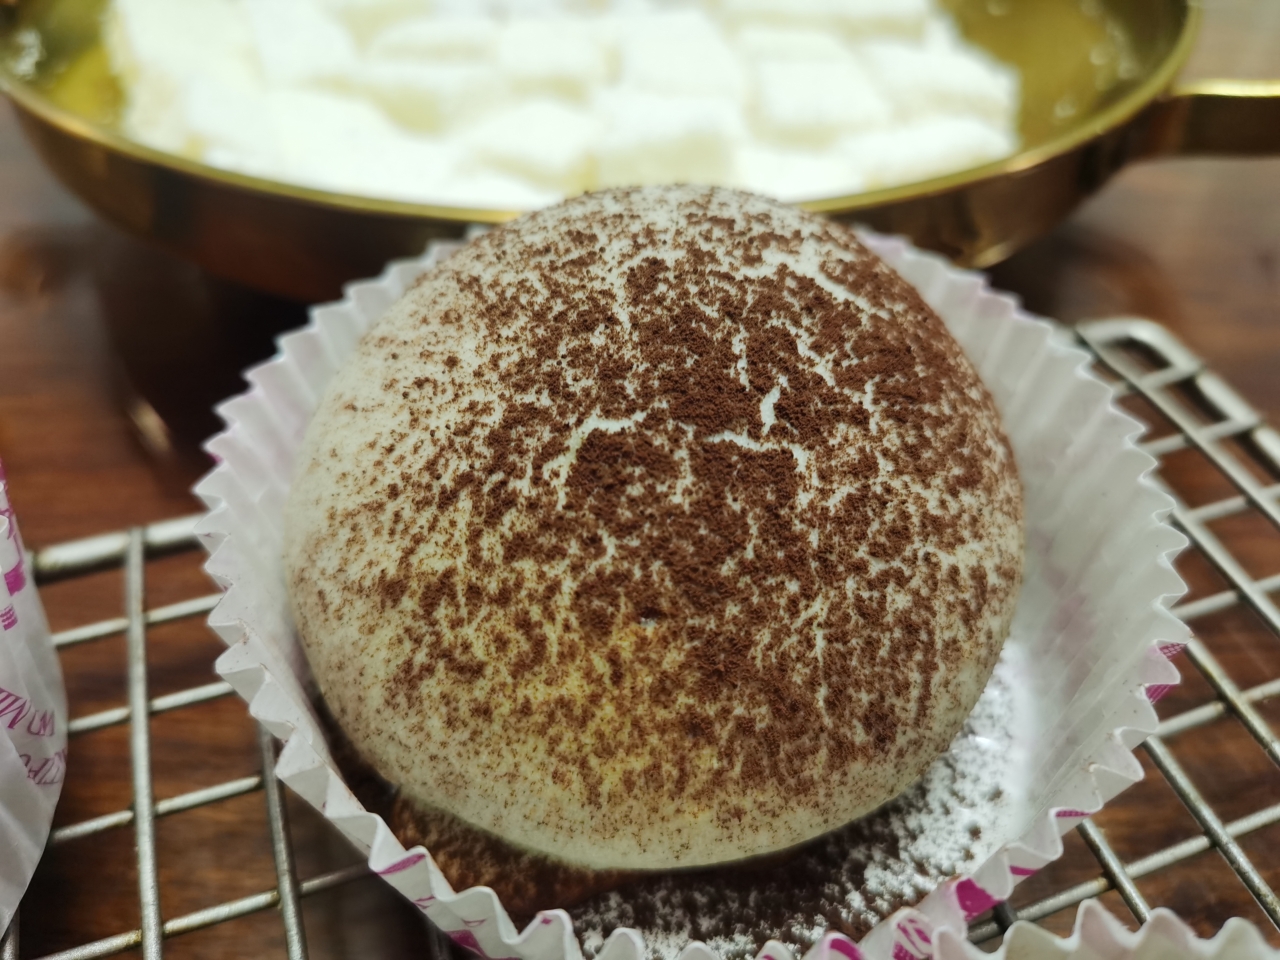 烘焙店畅销的巧克力可可牛奶面包❗️网红蘑菇云面包‼️松软好吃孩子最爱